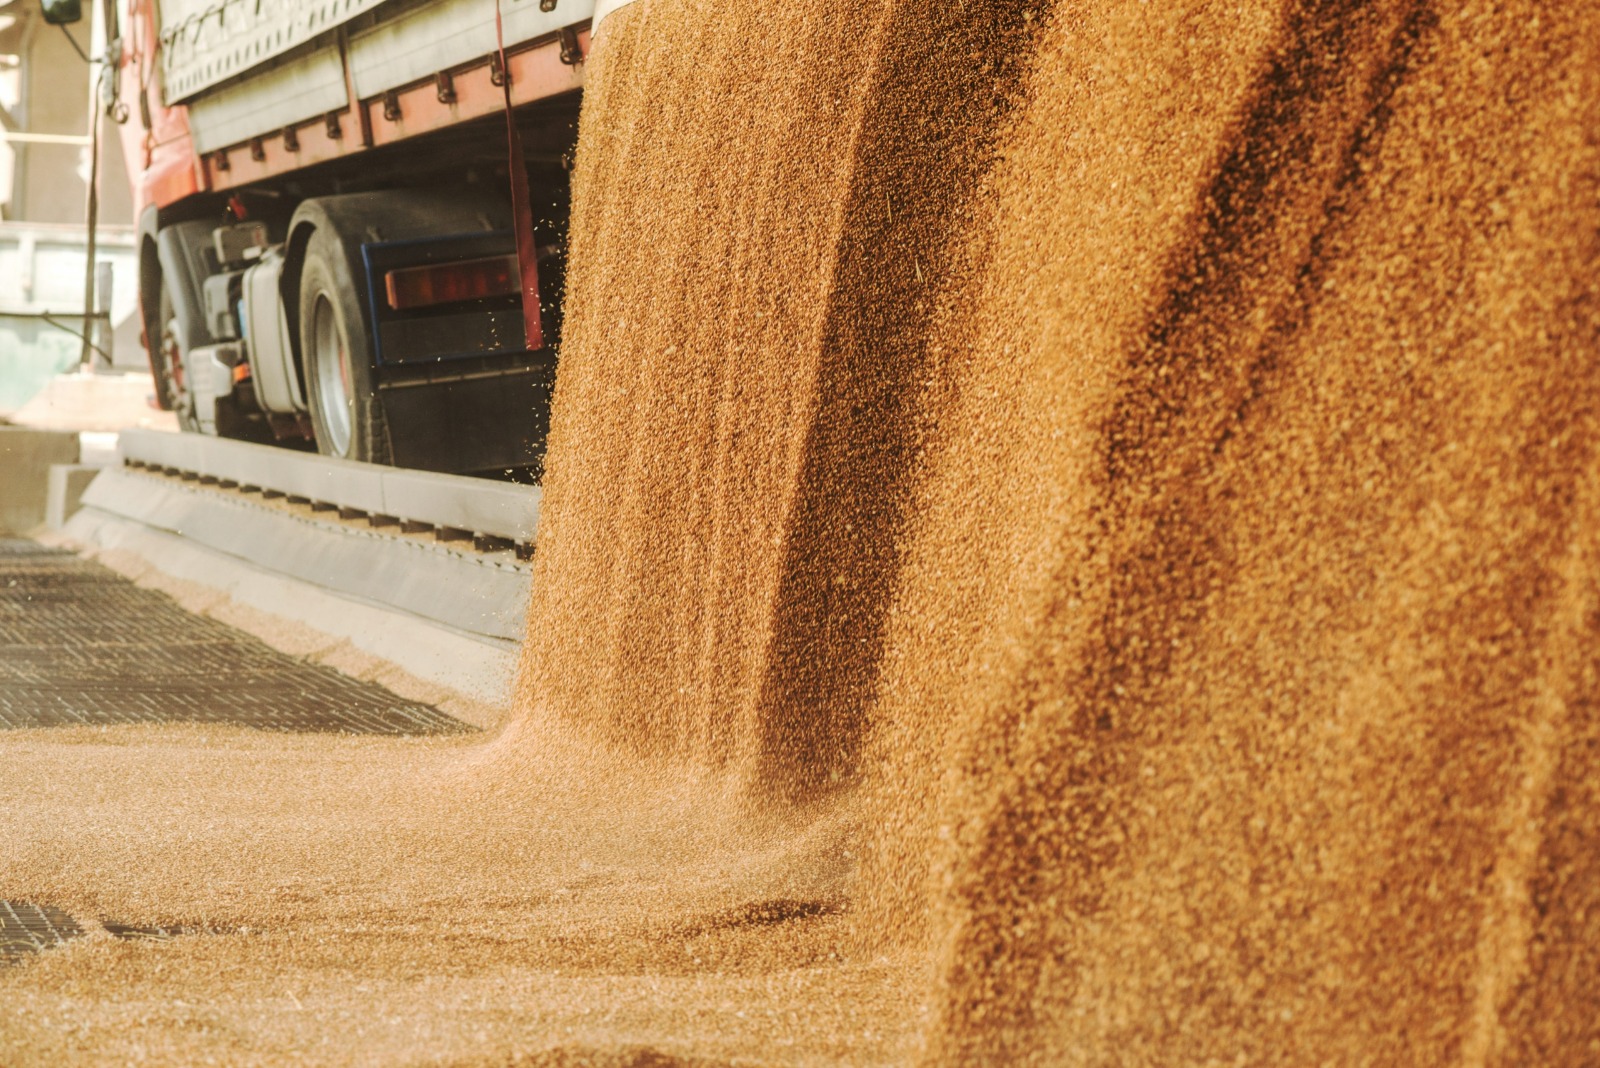 Египет ведет переговоры с ОАЭ о финансировании закупки пшеницы из Казахстана